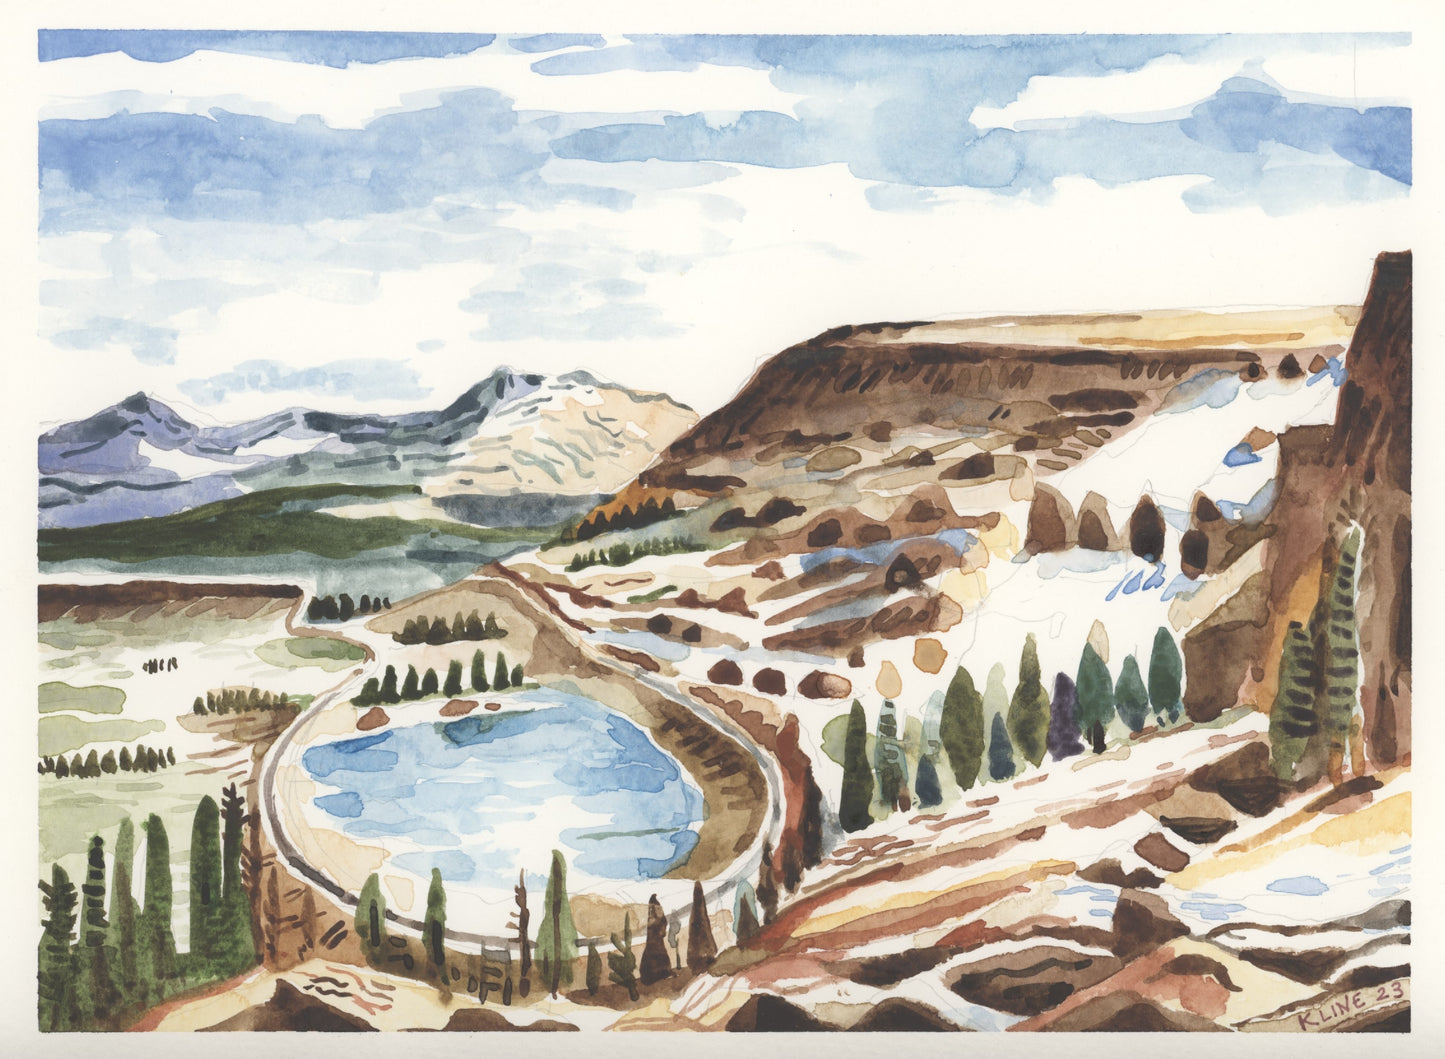 Yankee Doodle Lake, Colorado. Watercolor. 12" x 9". John Kline Artwork.